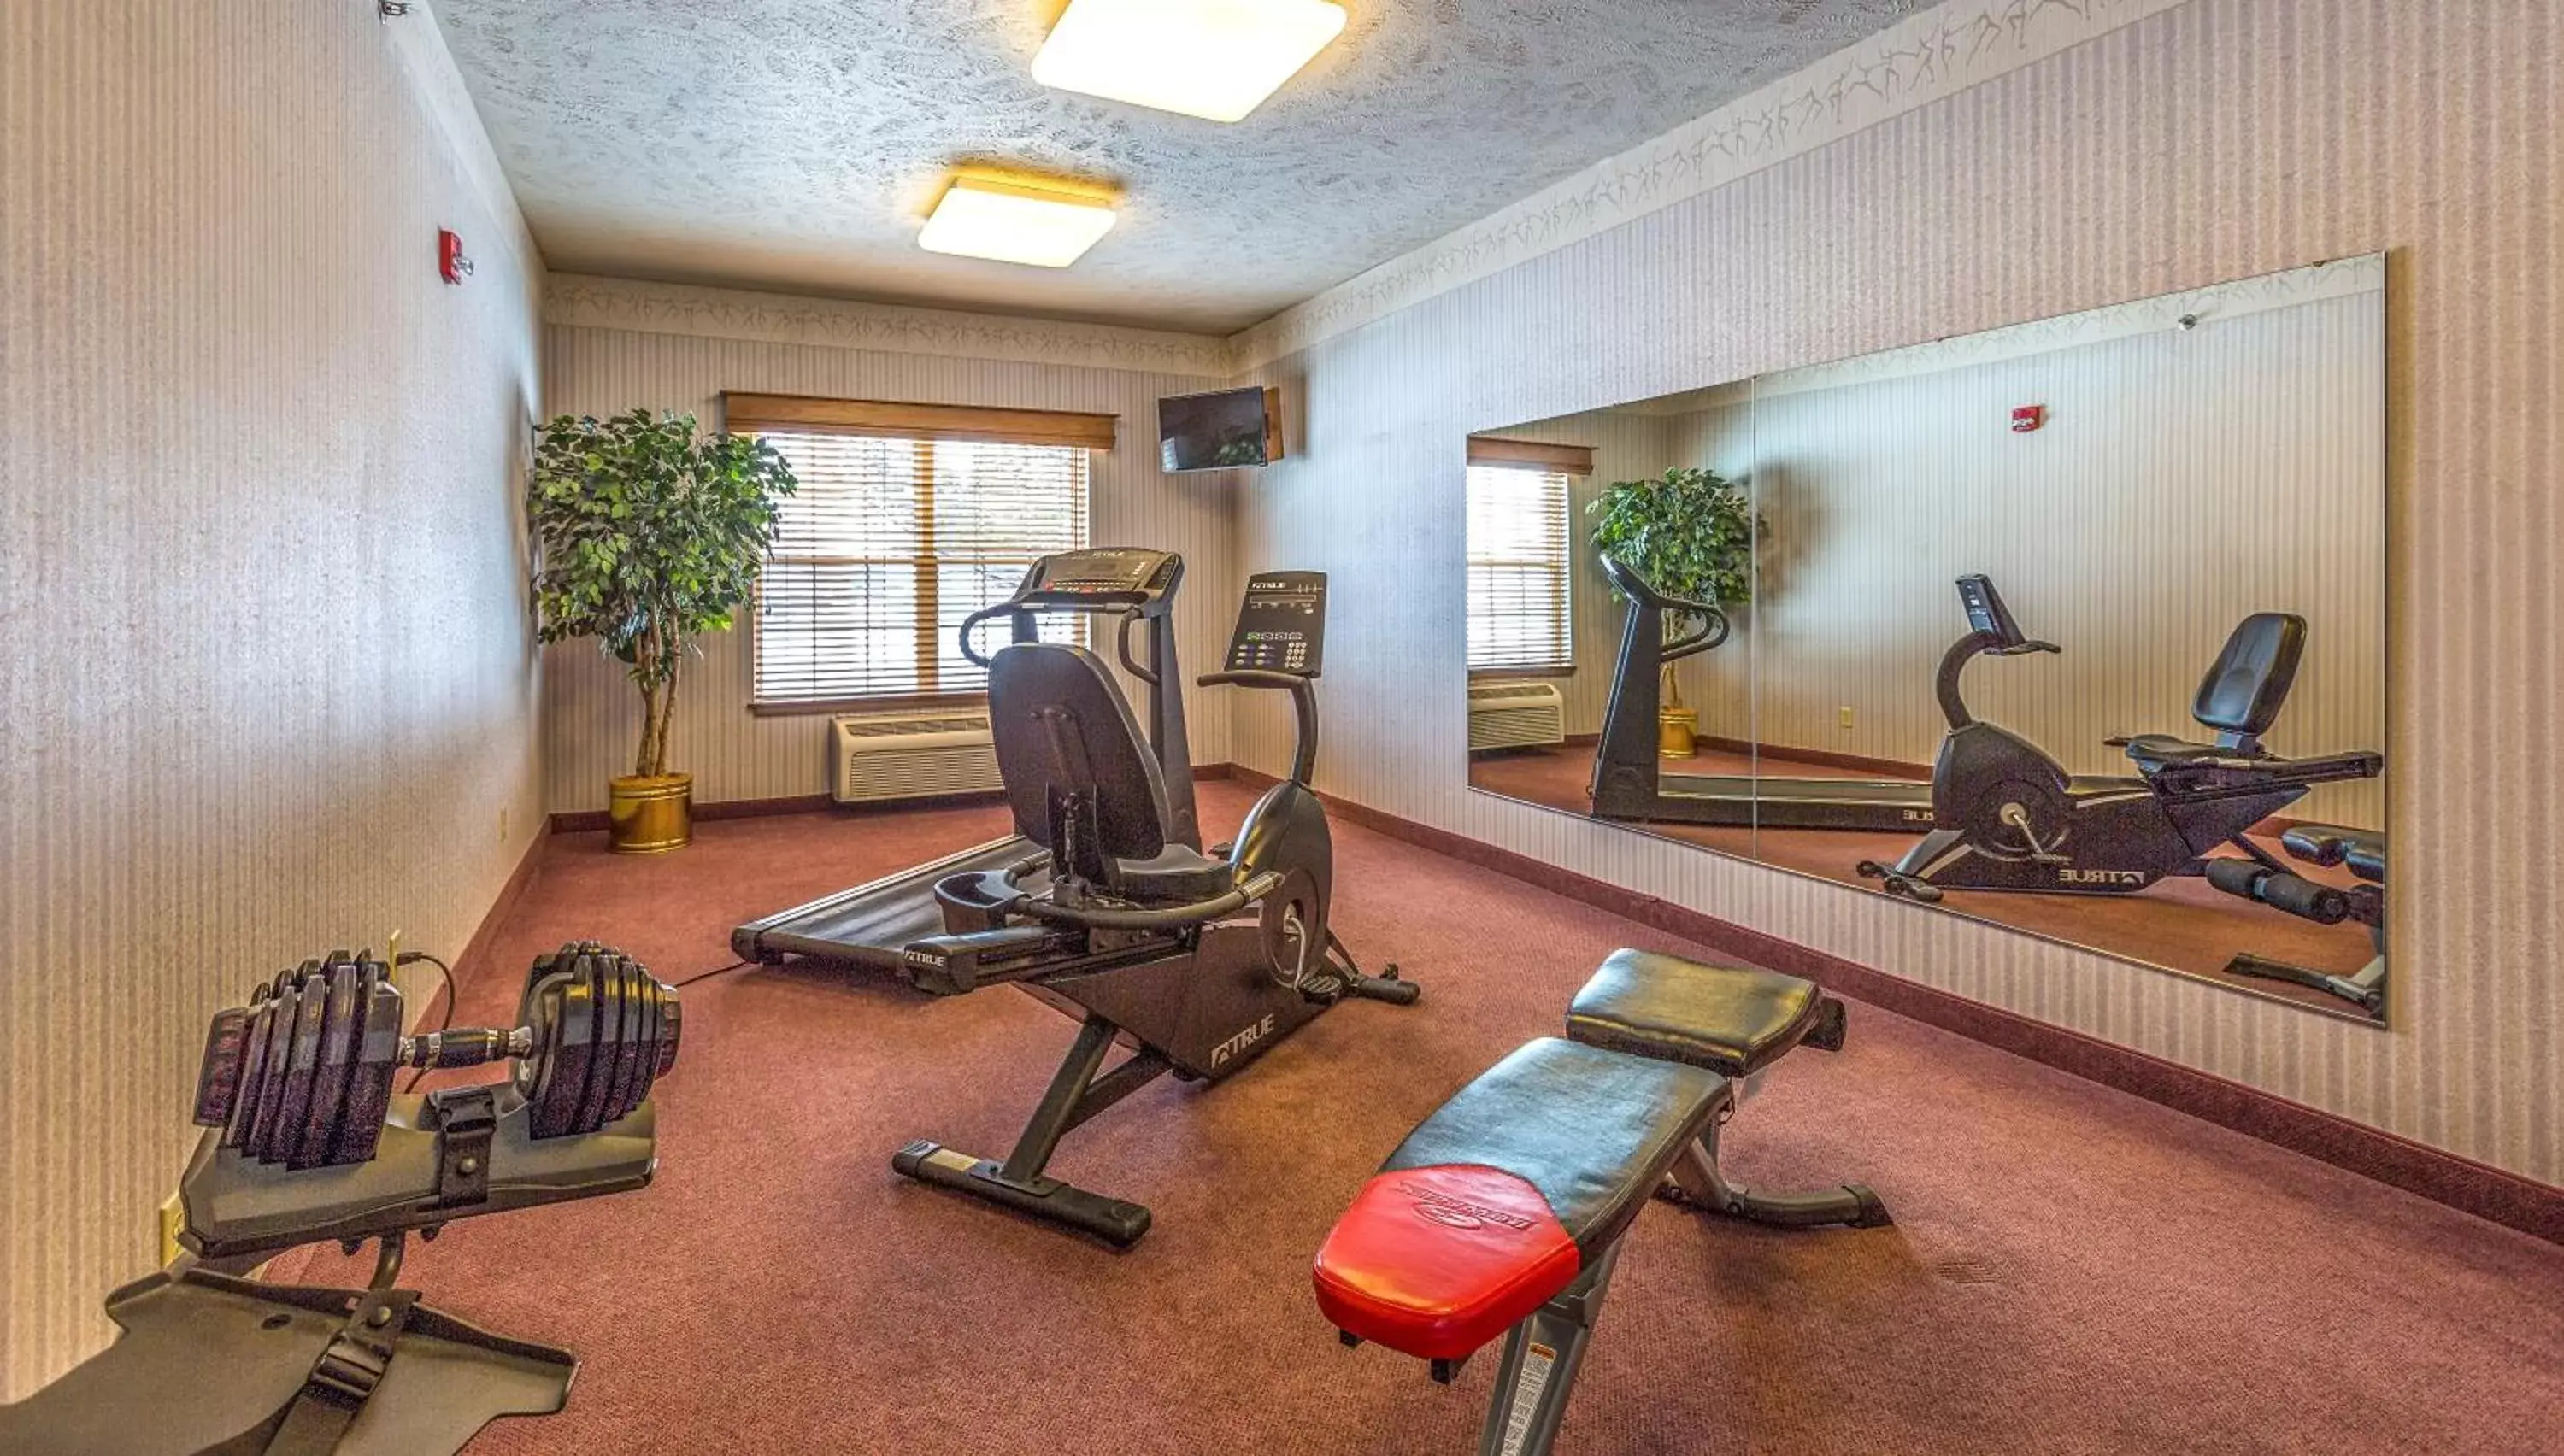 Fitness centre/facilities, Fitness Center/Facilities in Van Buren Hotel